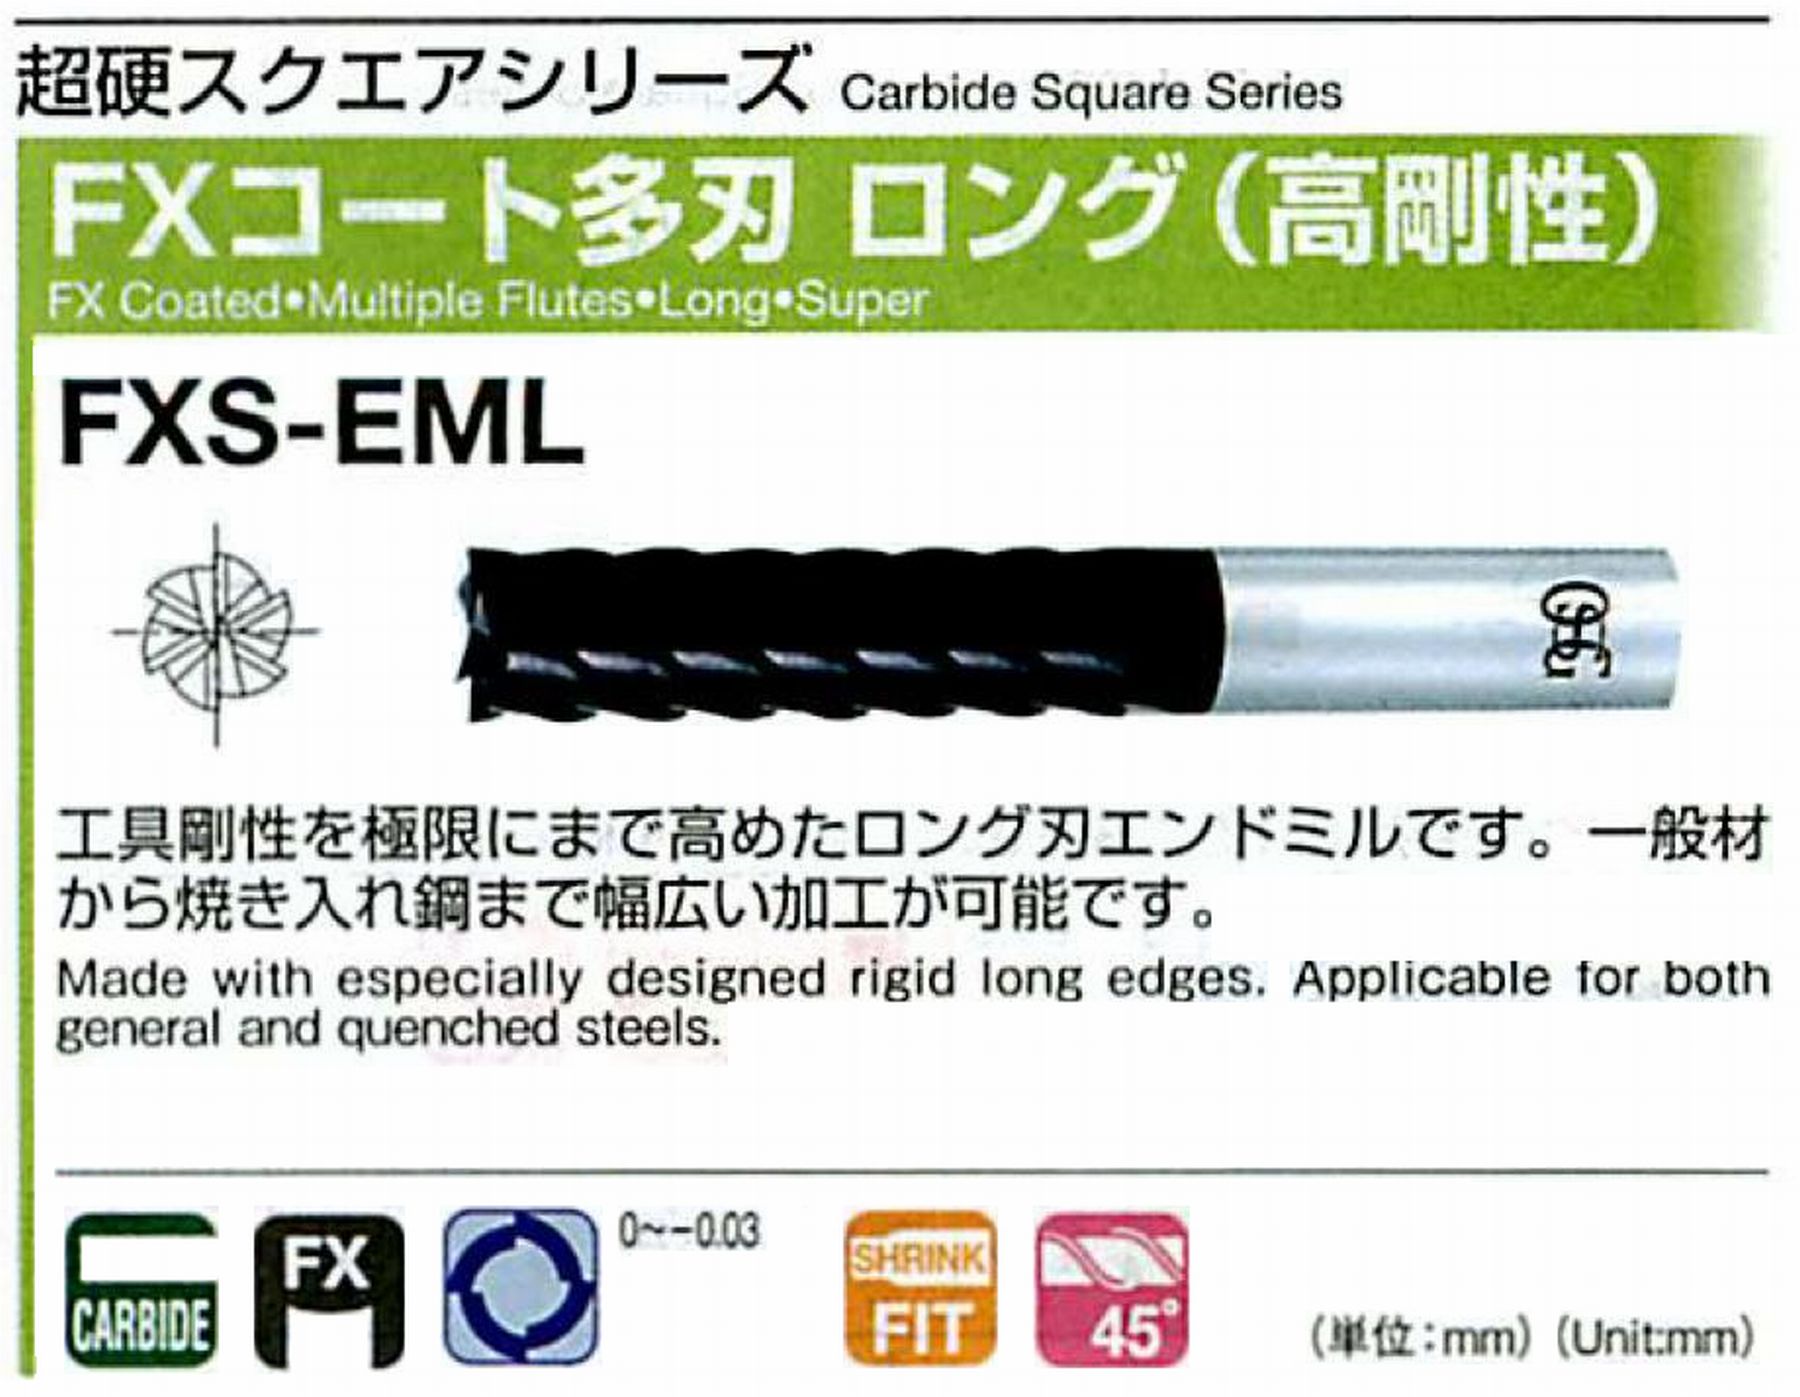 オーエスジー/OSG FXコート 多刃ロング(高剛性) FXS-EML 外径25 全長165 刃長90 シャンク径25mm 刃数8